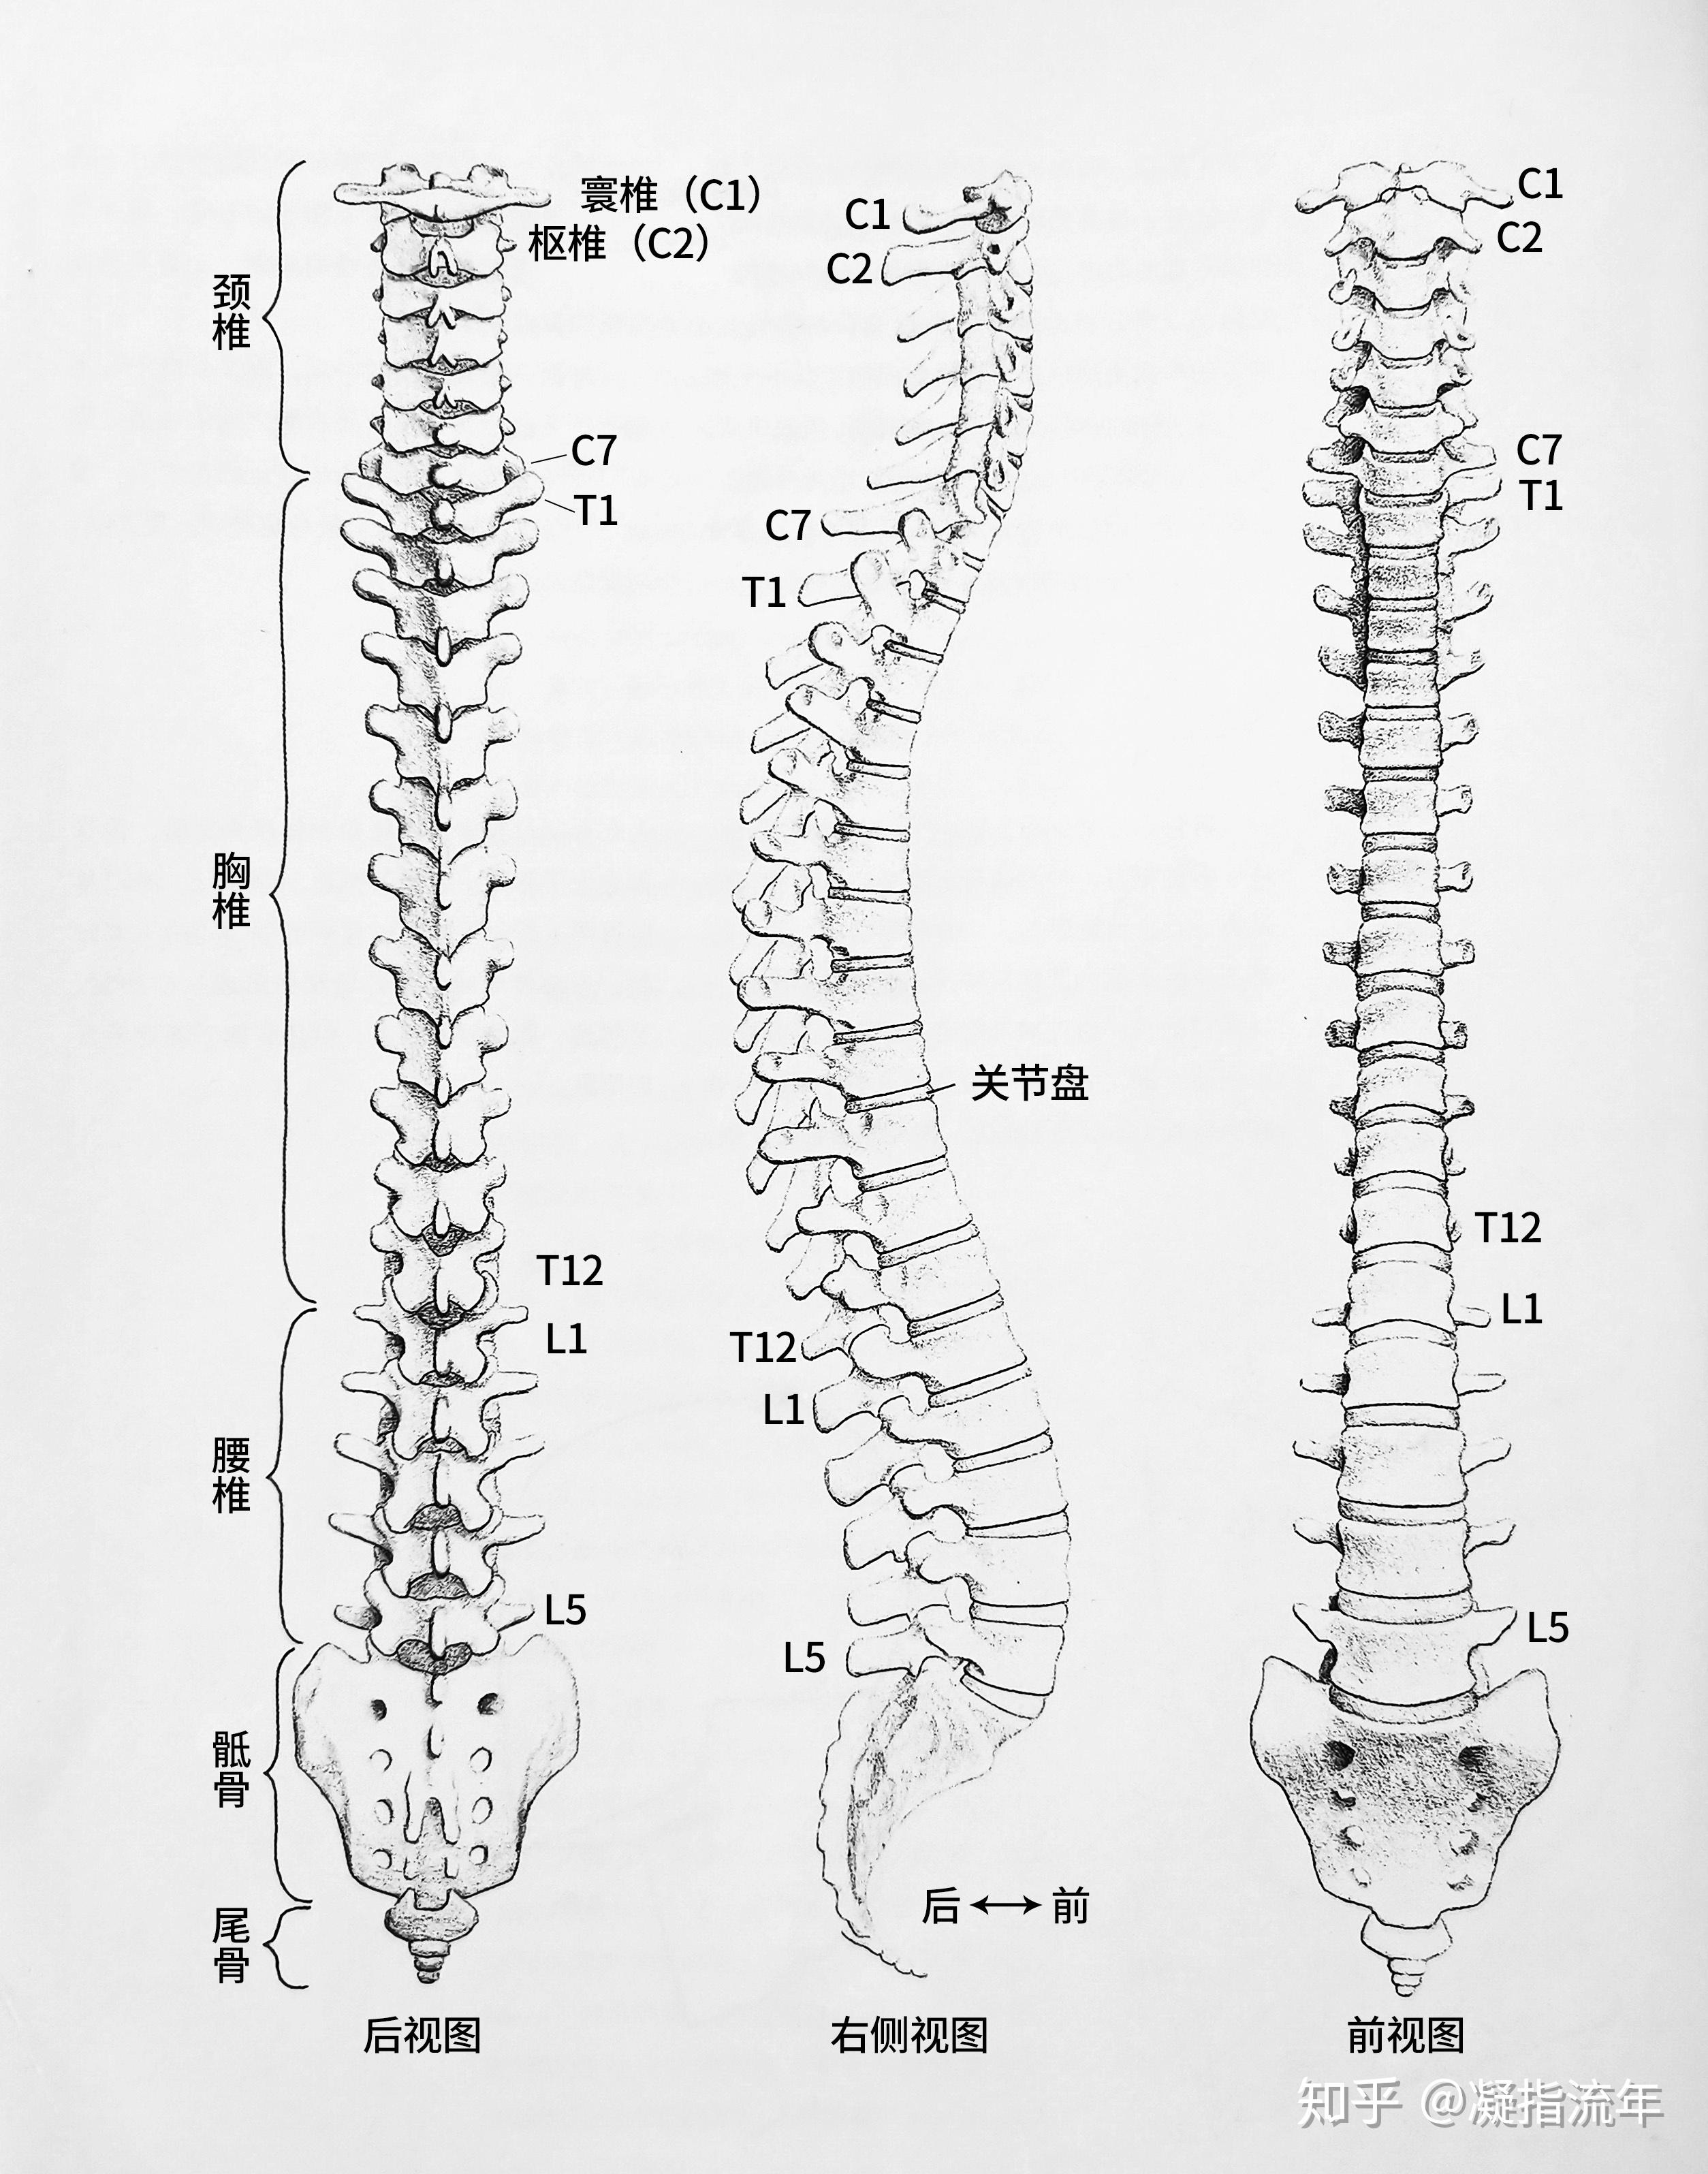 系统解剖学 | 神经系统 | 椎骨、脊神经、脊髓节段的关系 - 知乎